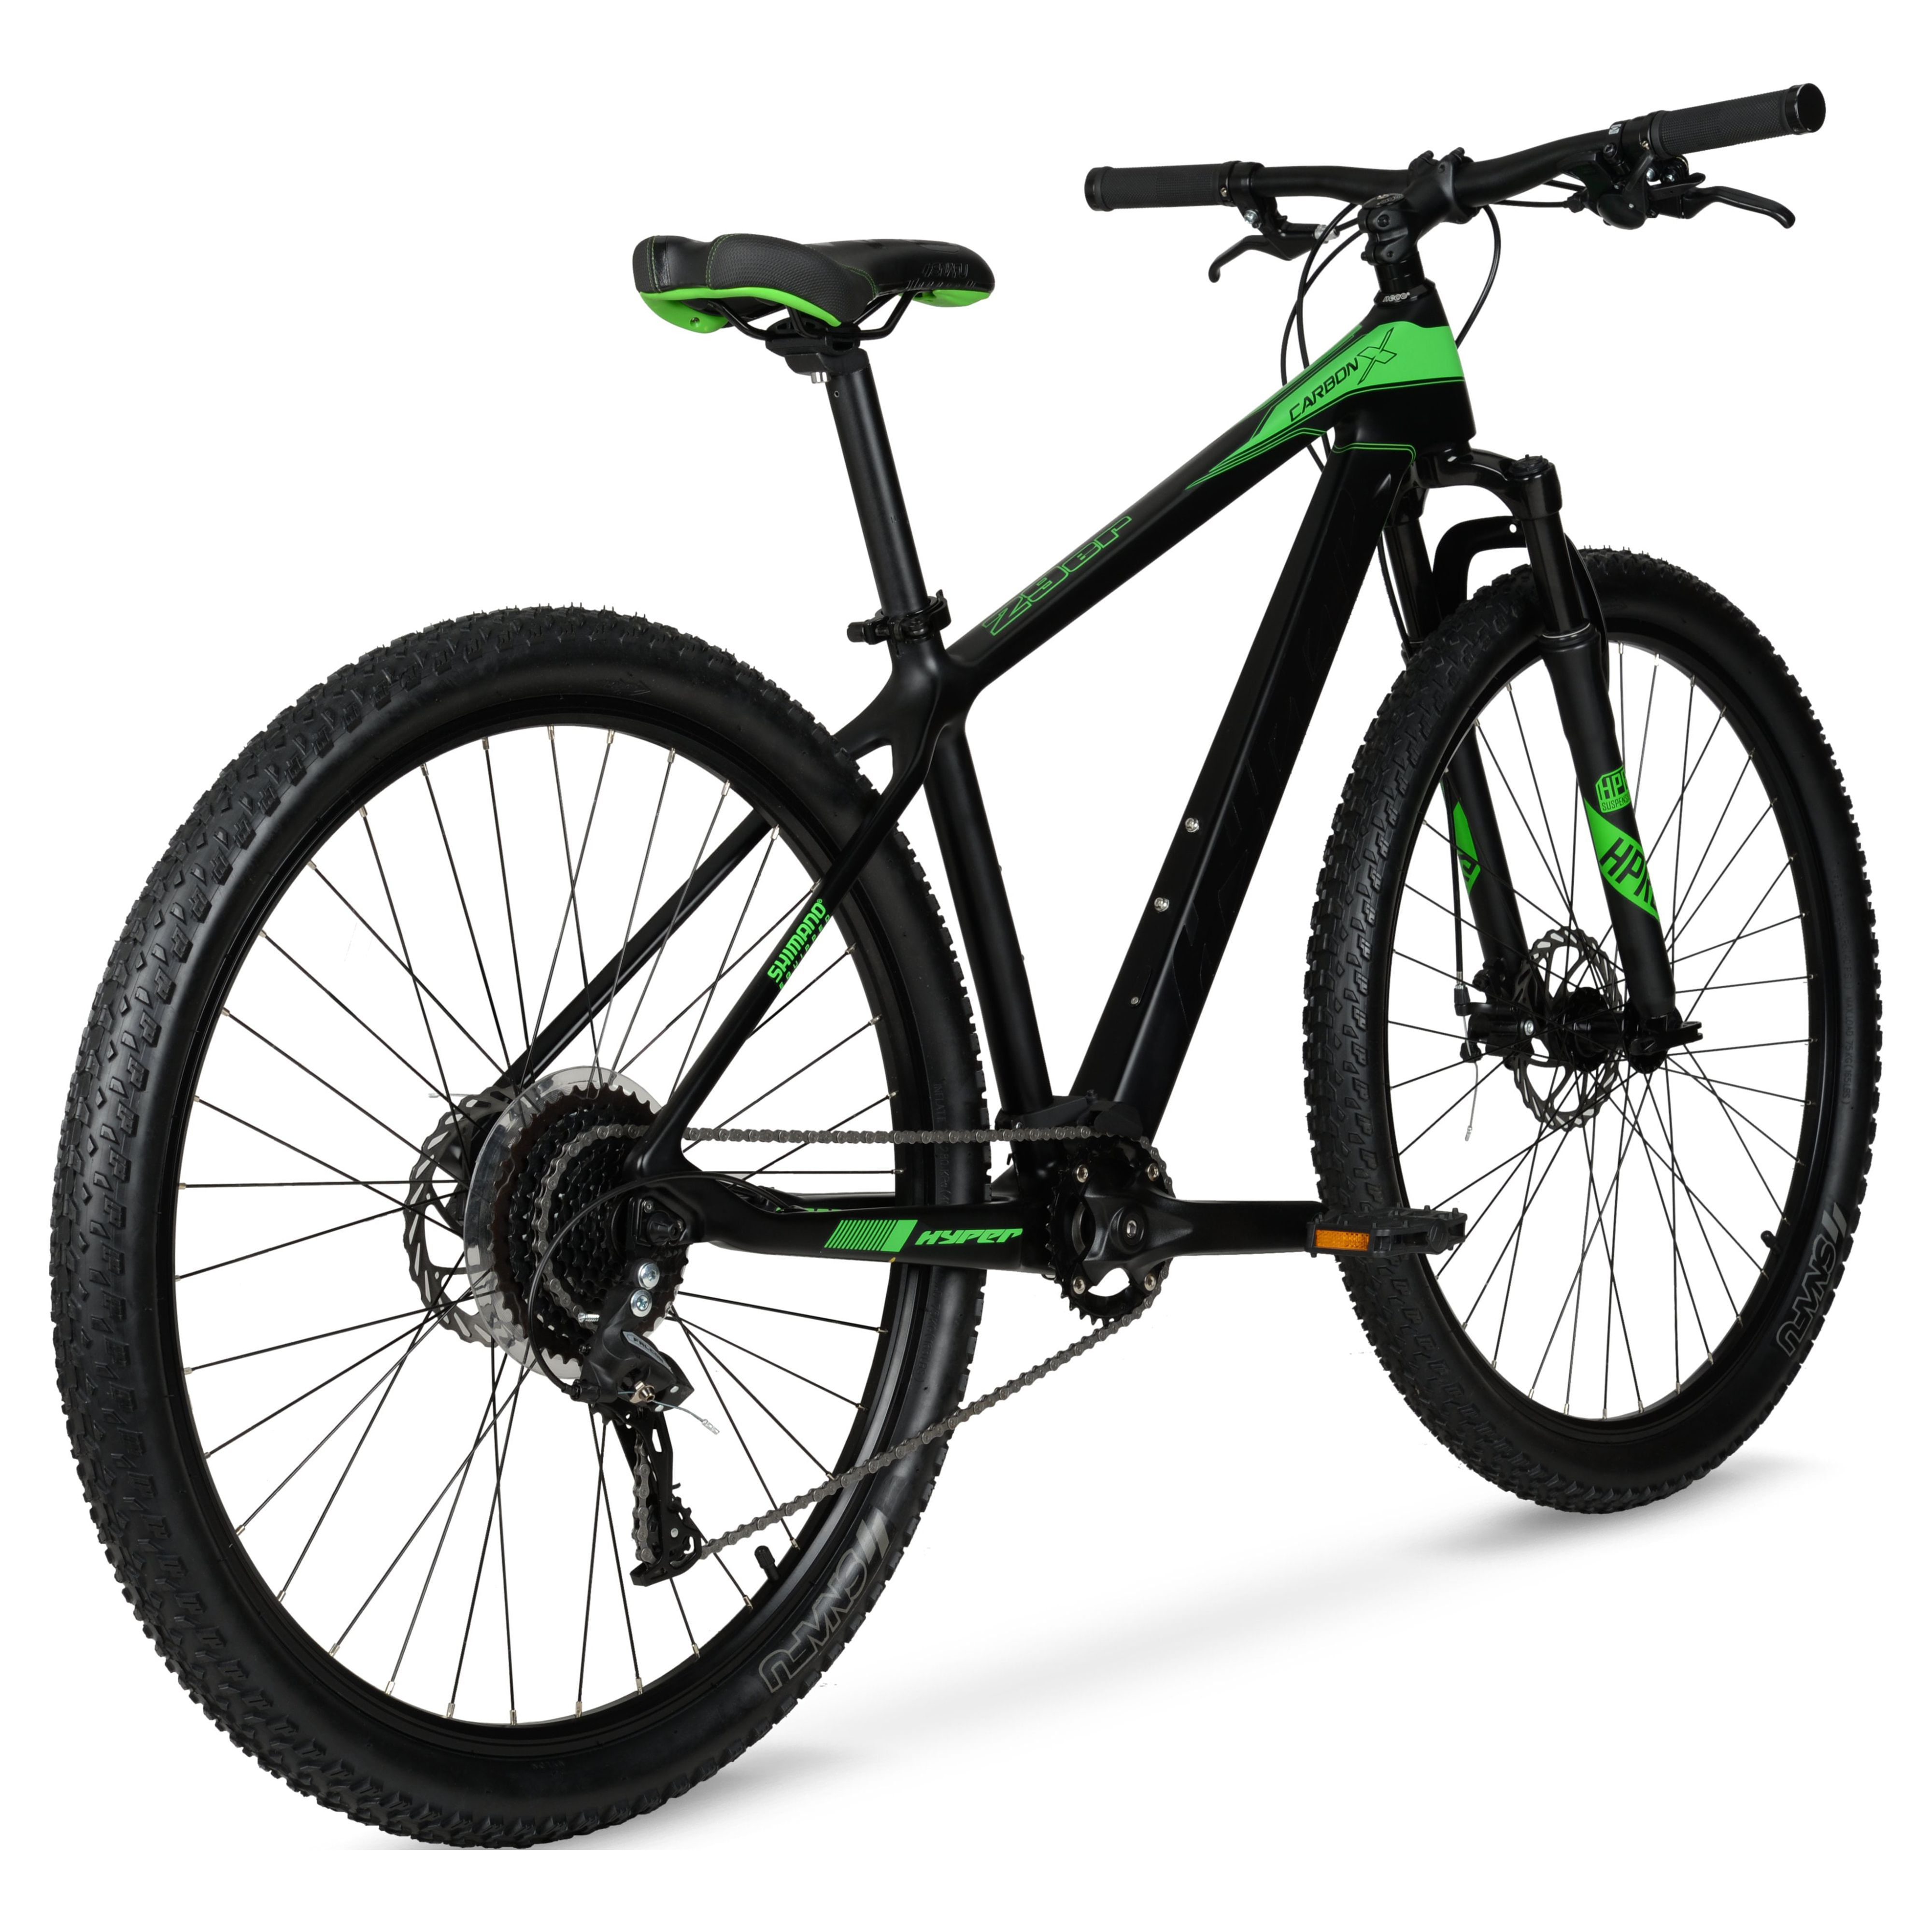 Hyper 29" Carbon Fiber Men's Mountain Bike, Black/Green - image 9 of 12